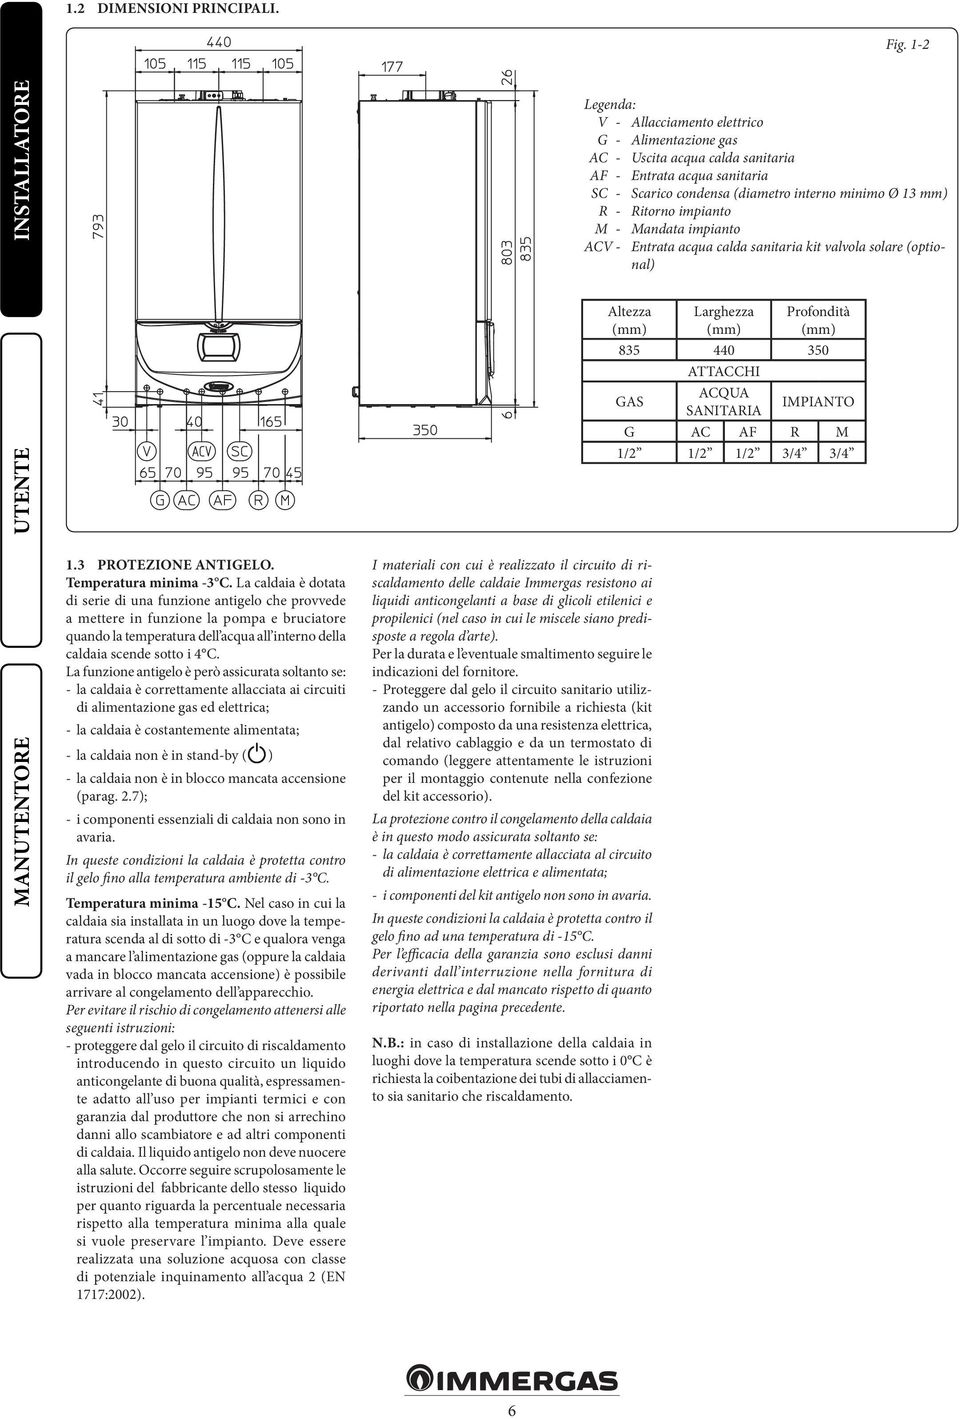 impianto M - Mandata impianto ACV - Entrata acqua calda sanitaria kit valvola solare (optional) 1.3 PROTEZIONE ANTIGELO. Temperatura minima -3 C.